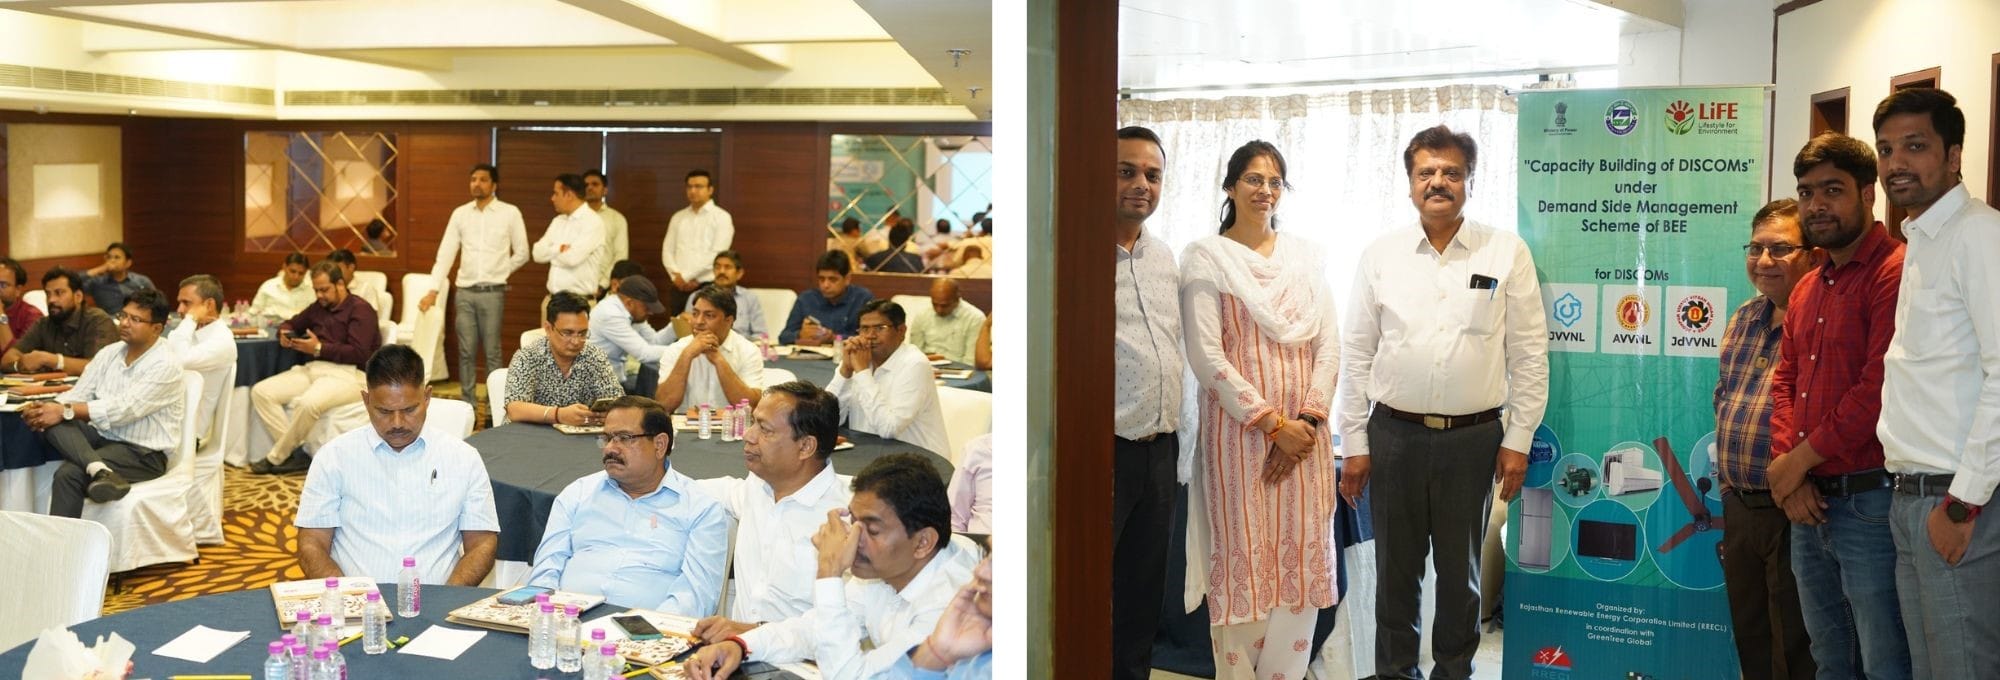 Jaipur: Workshop for "Capacity Building  for DISCOMs" under Demand Side Management Scheme